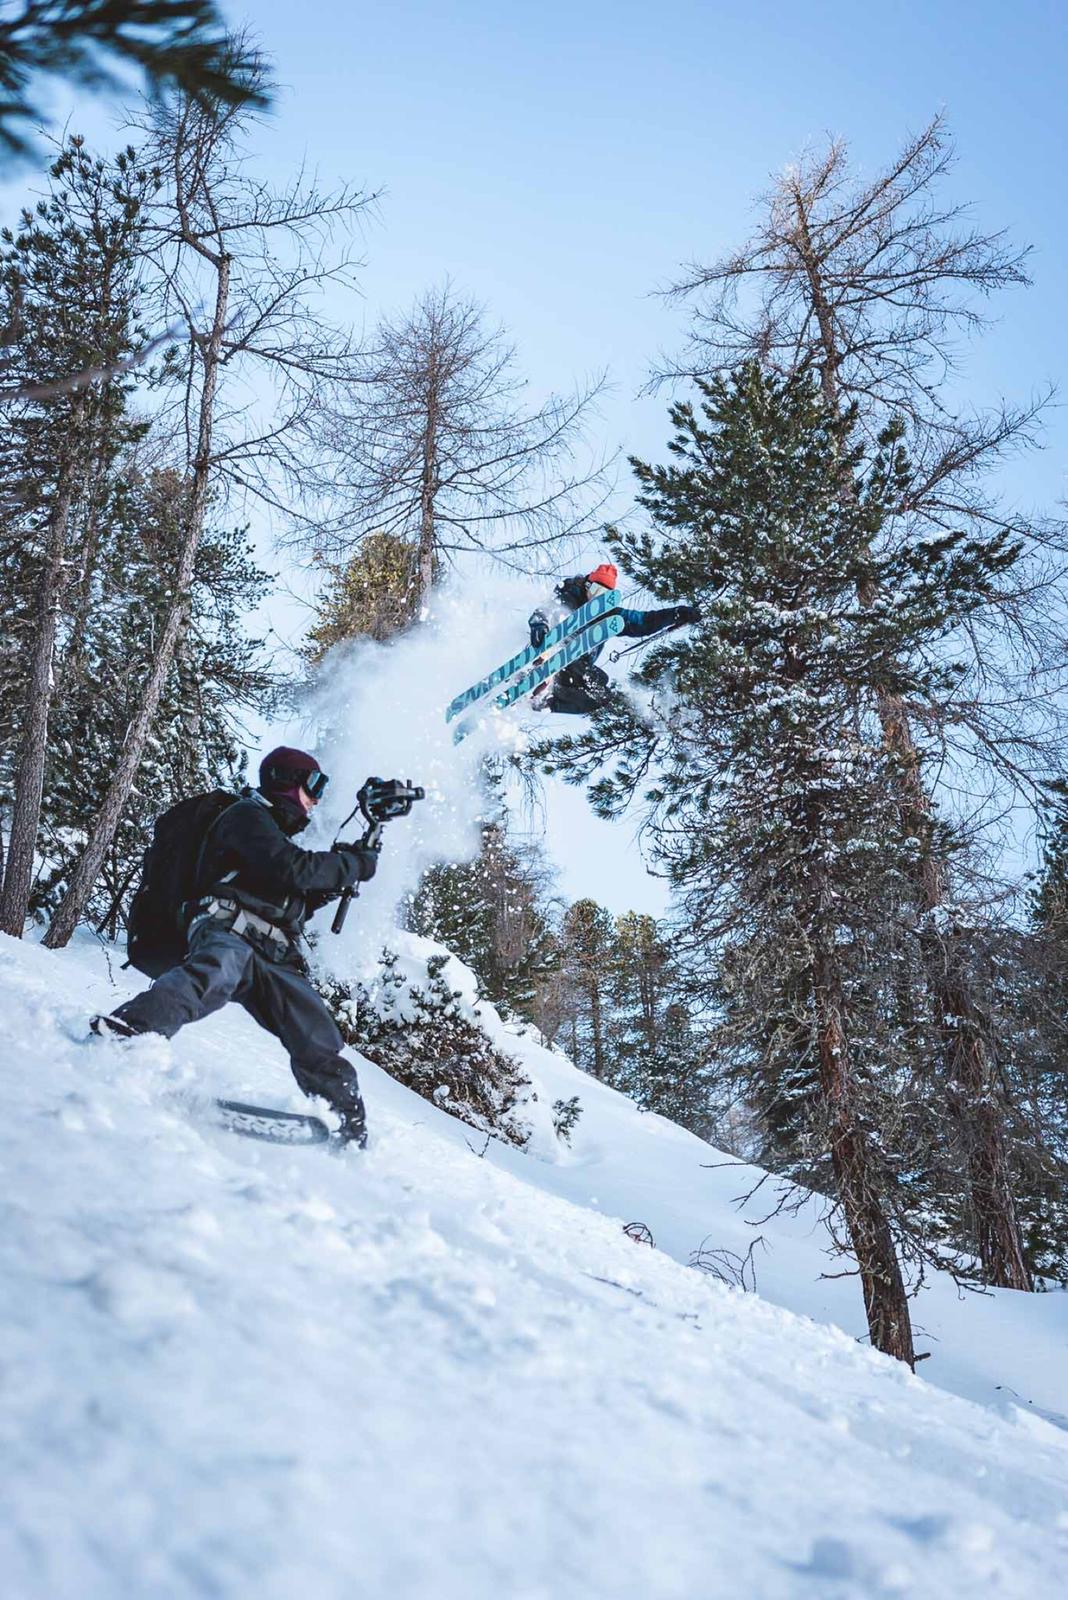 Nick Meilleur filming Anttu Oikkonen for Halcyon Days near Innsbruck, Austria